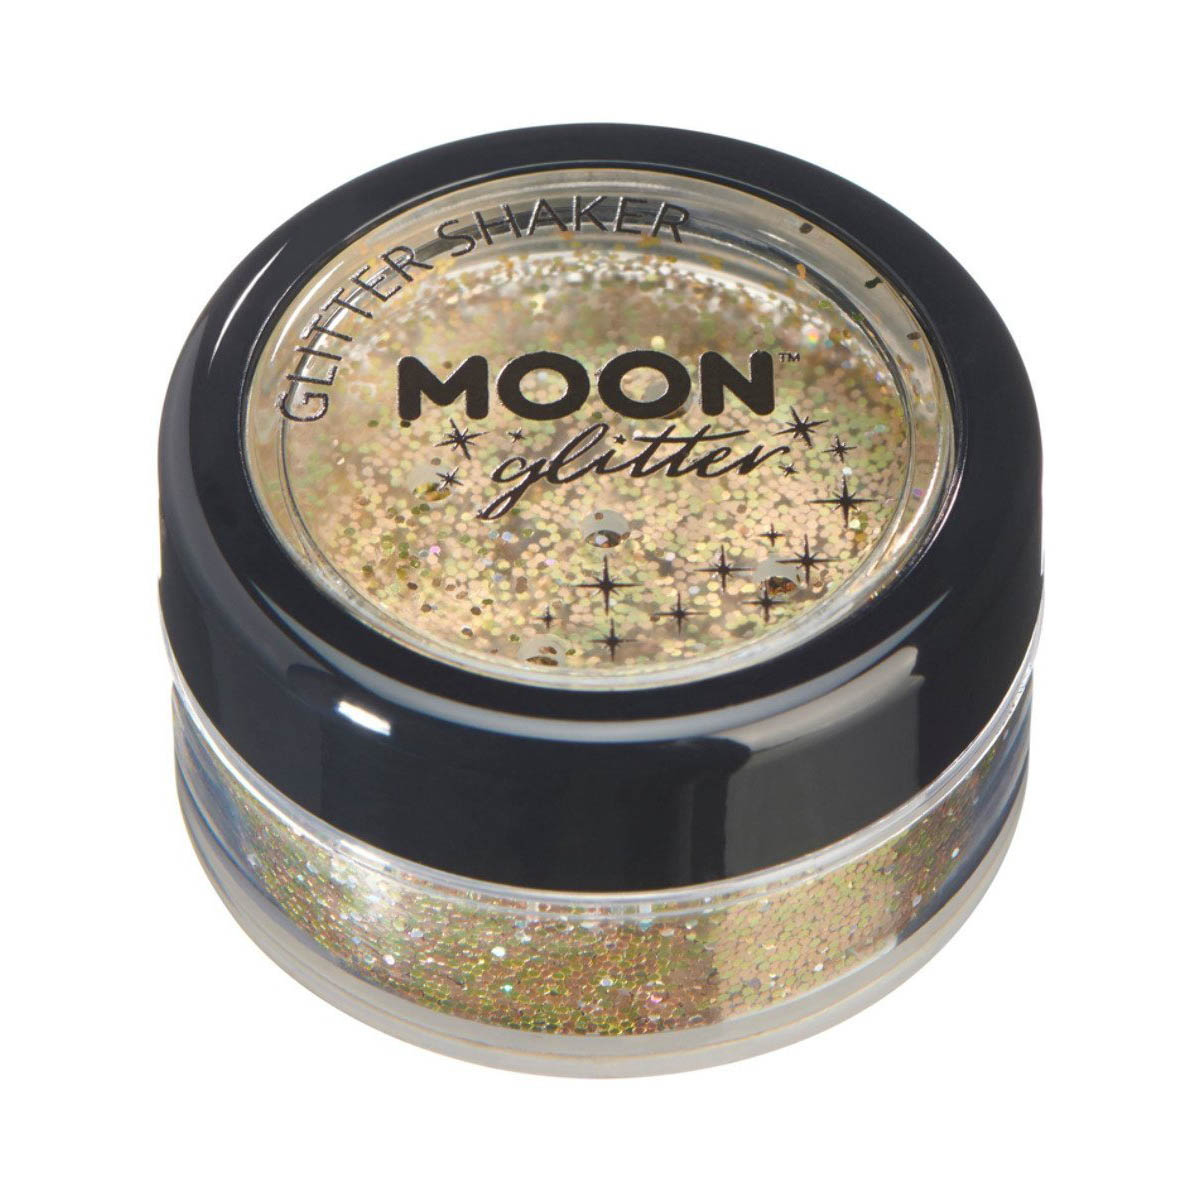 Moon glitter i shaker burk, holografisk 5g Guld